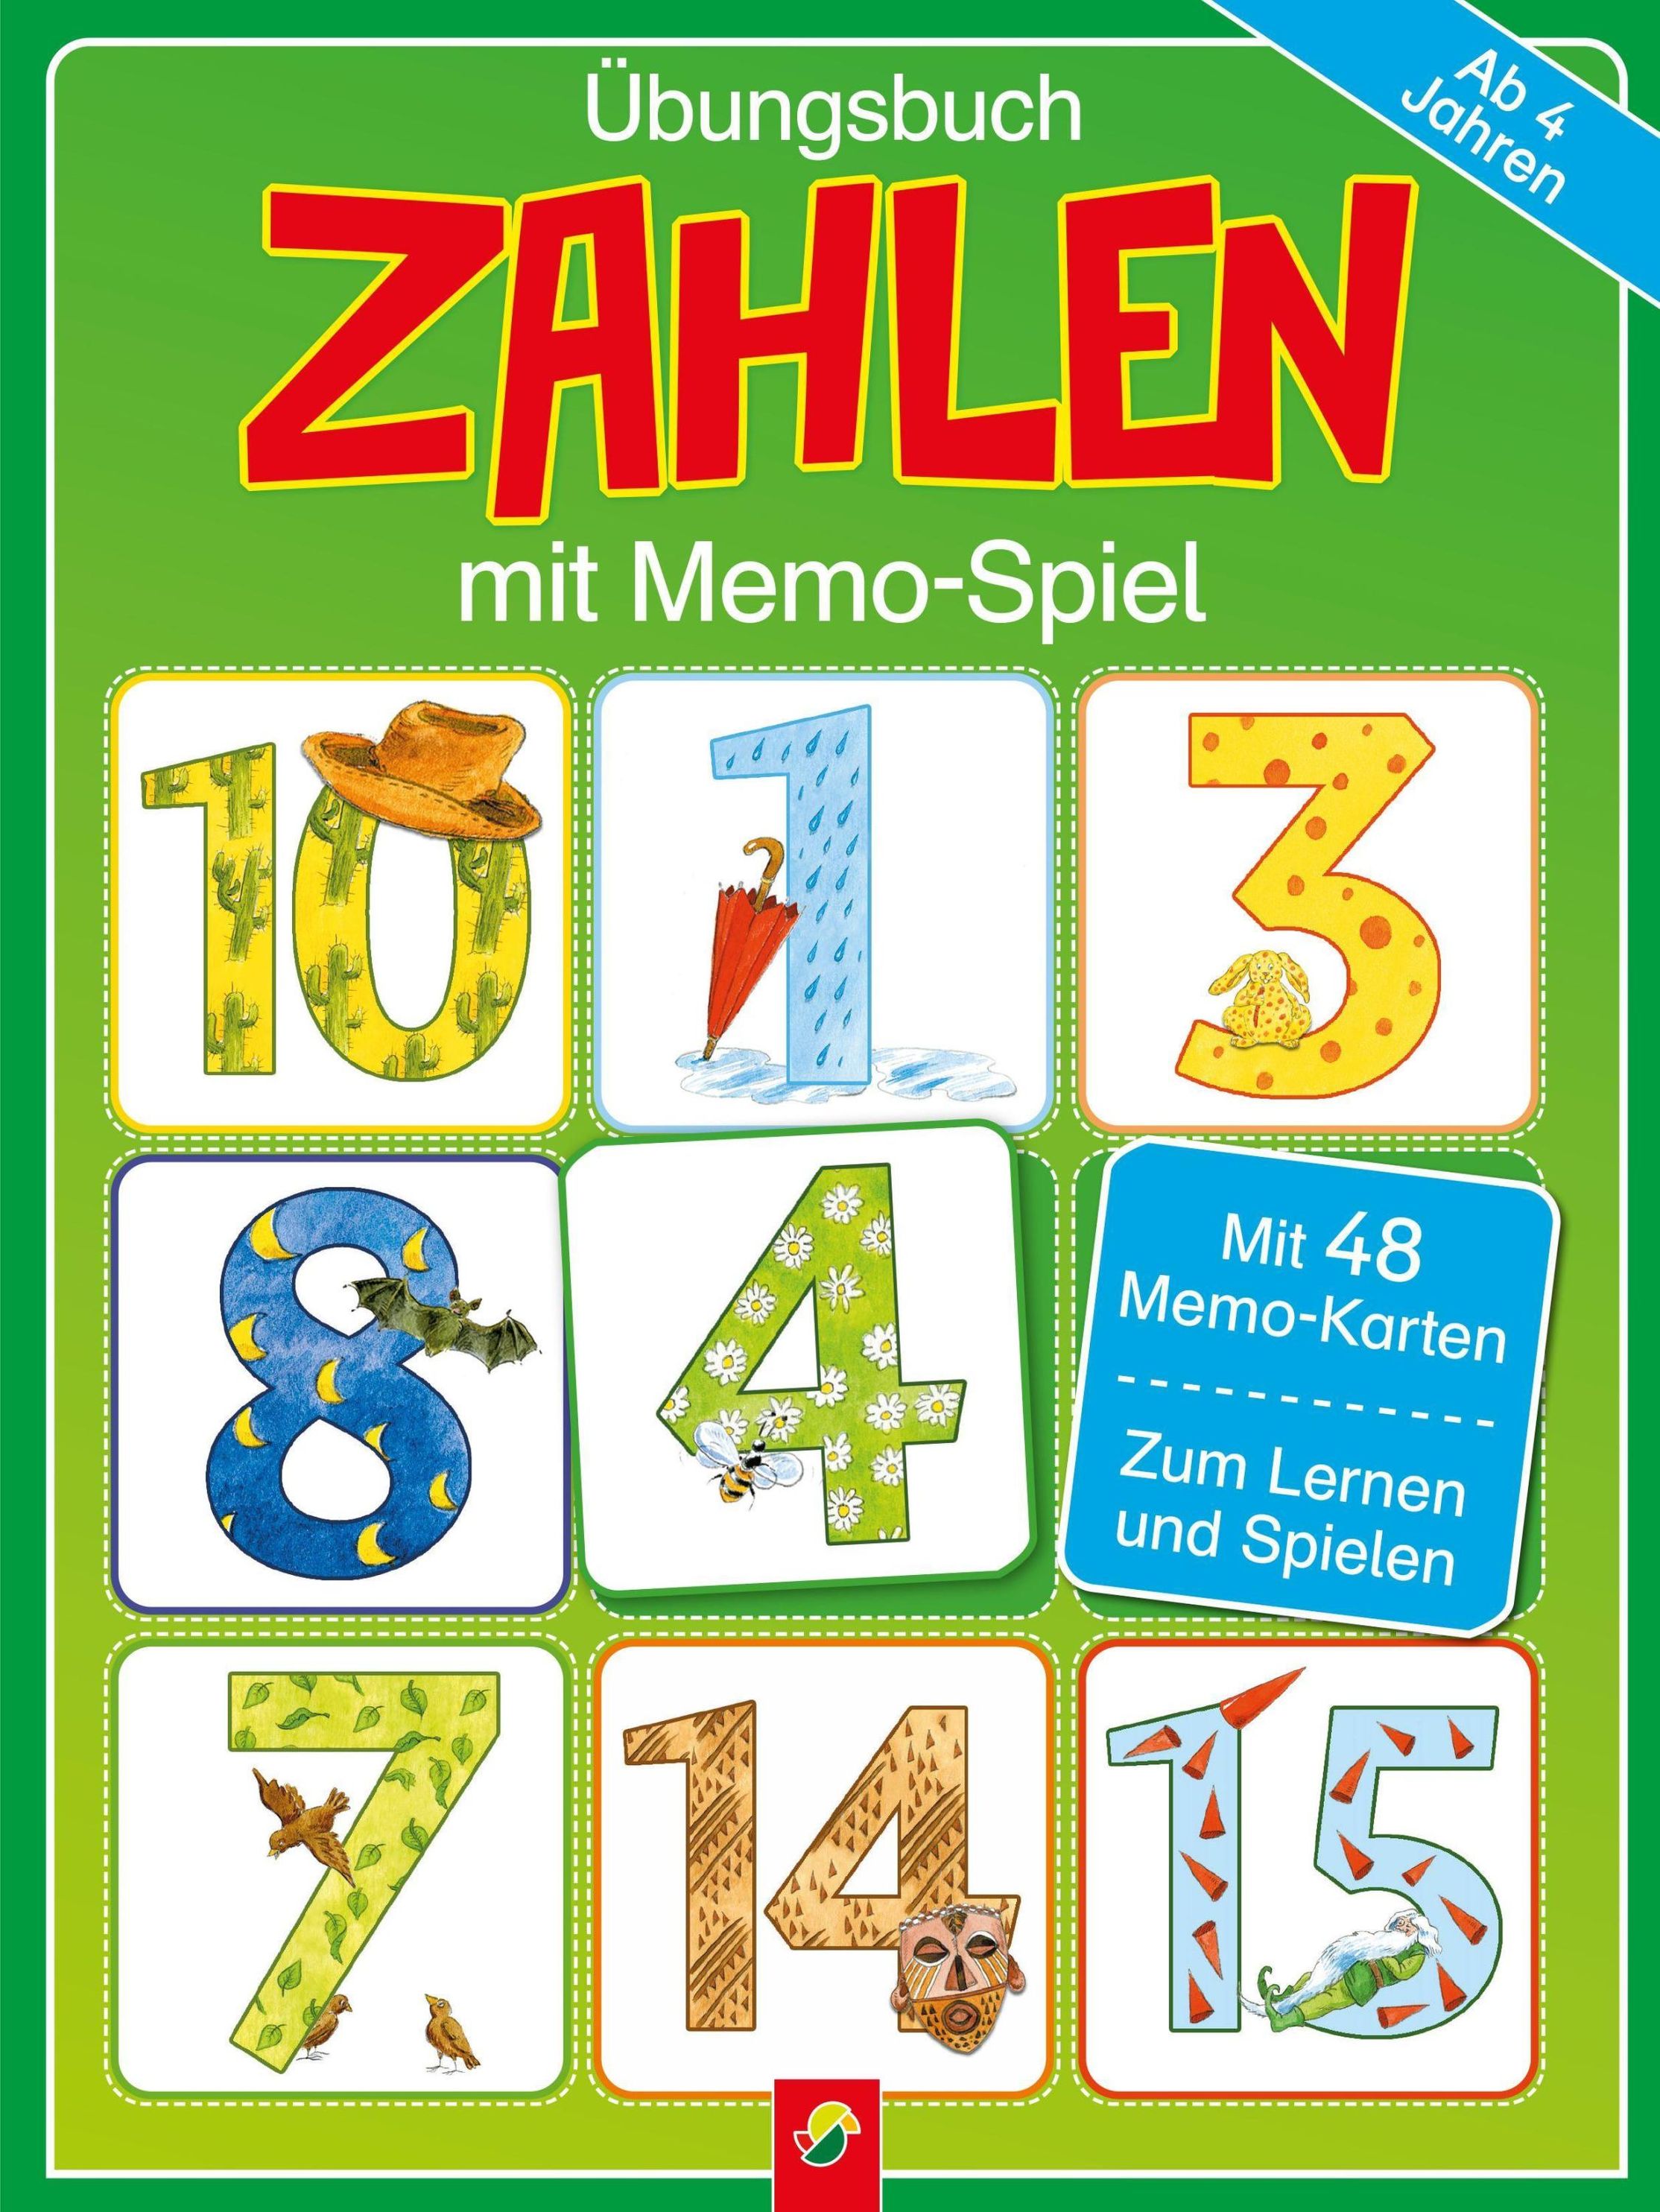 Übungsbuch Zahlen mit Memo-Spiel für Kinder ab 4 Jahren Buch jetzt online  bei Weltbild.ch bestellen